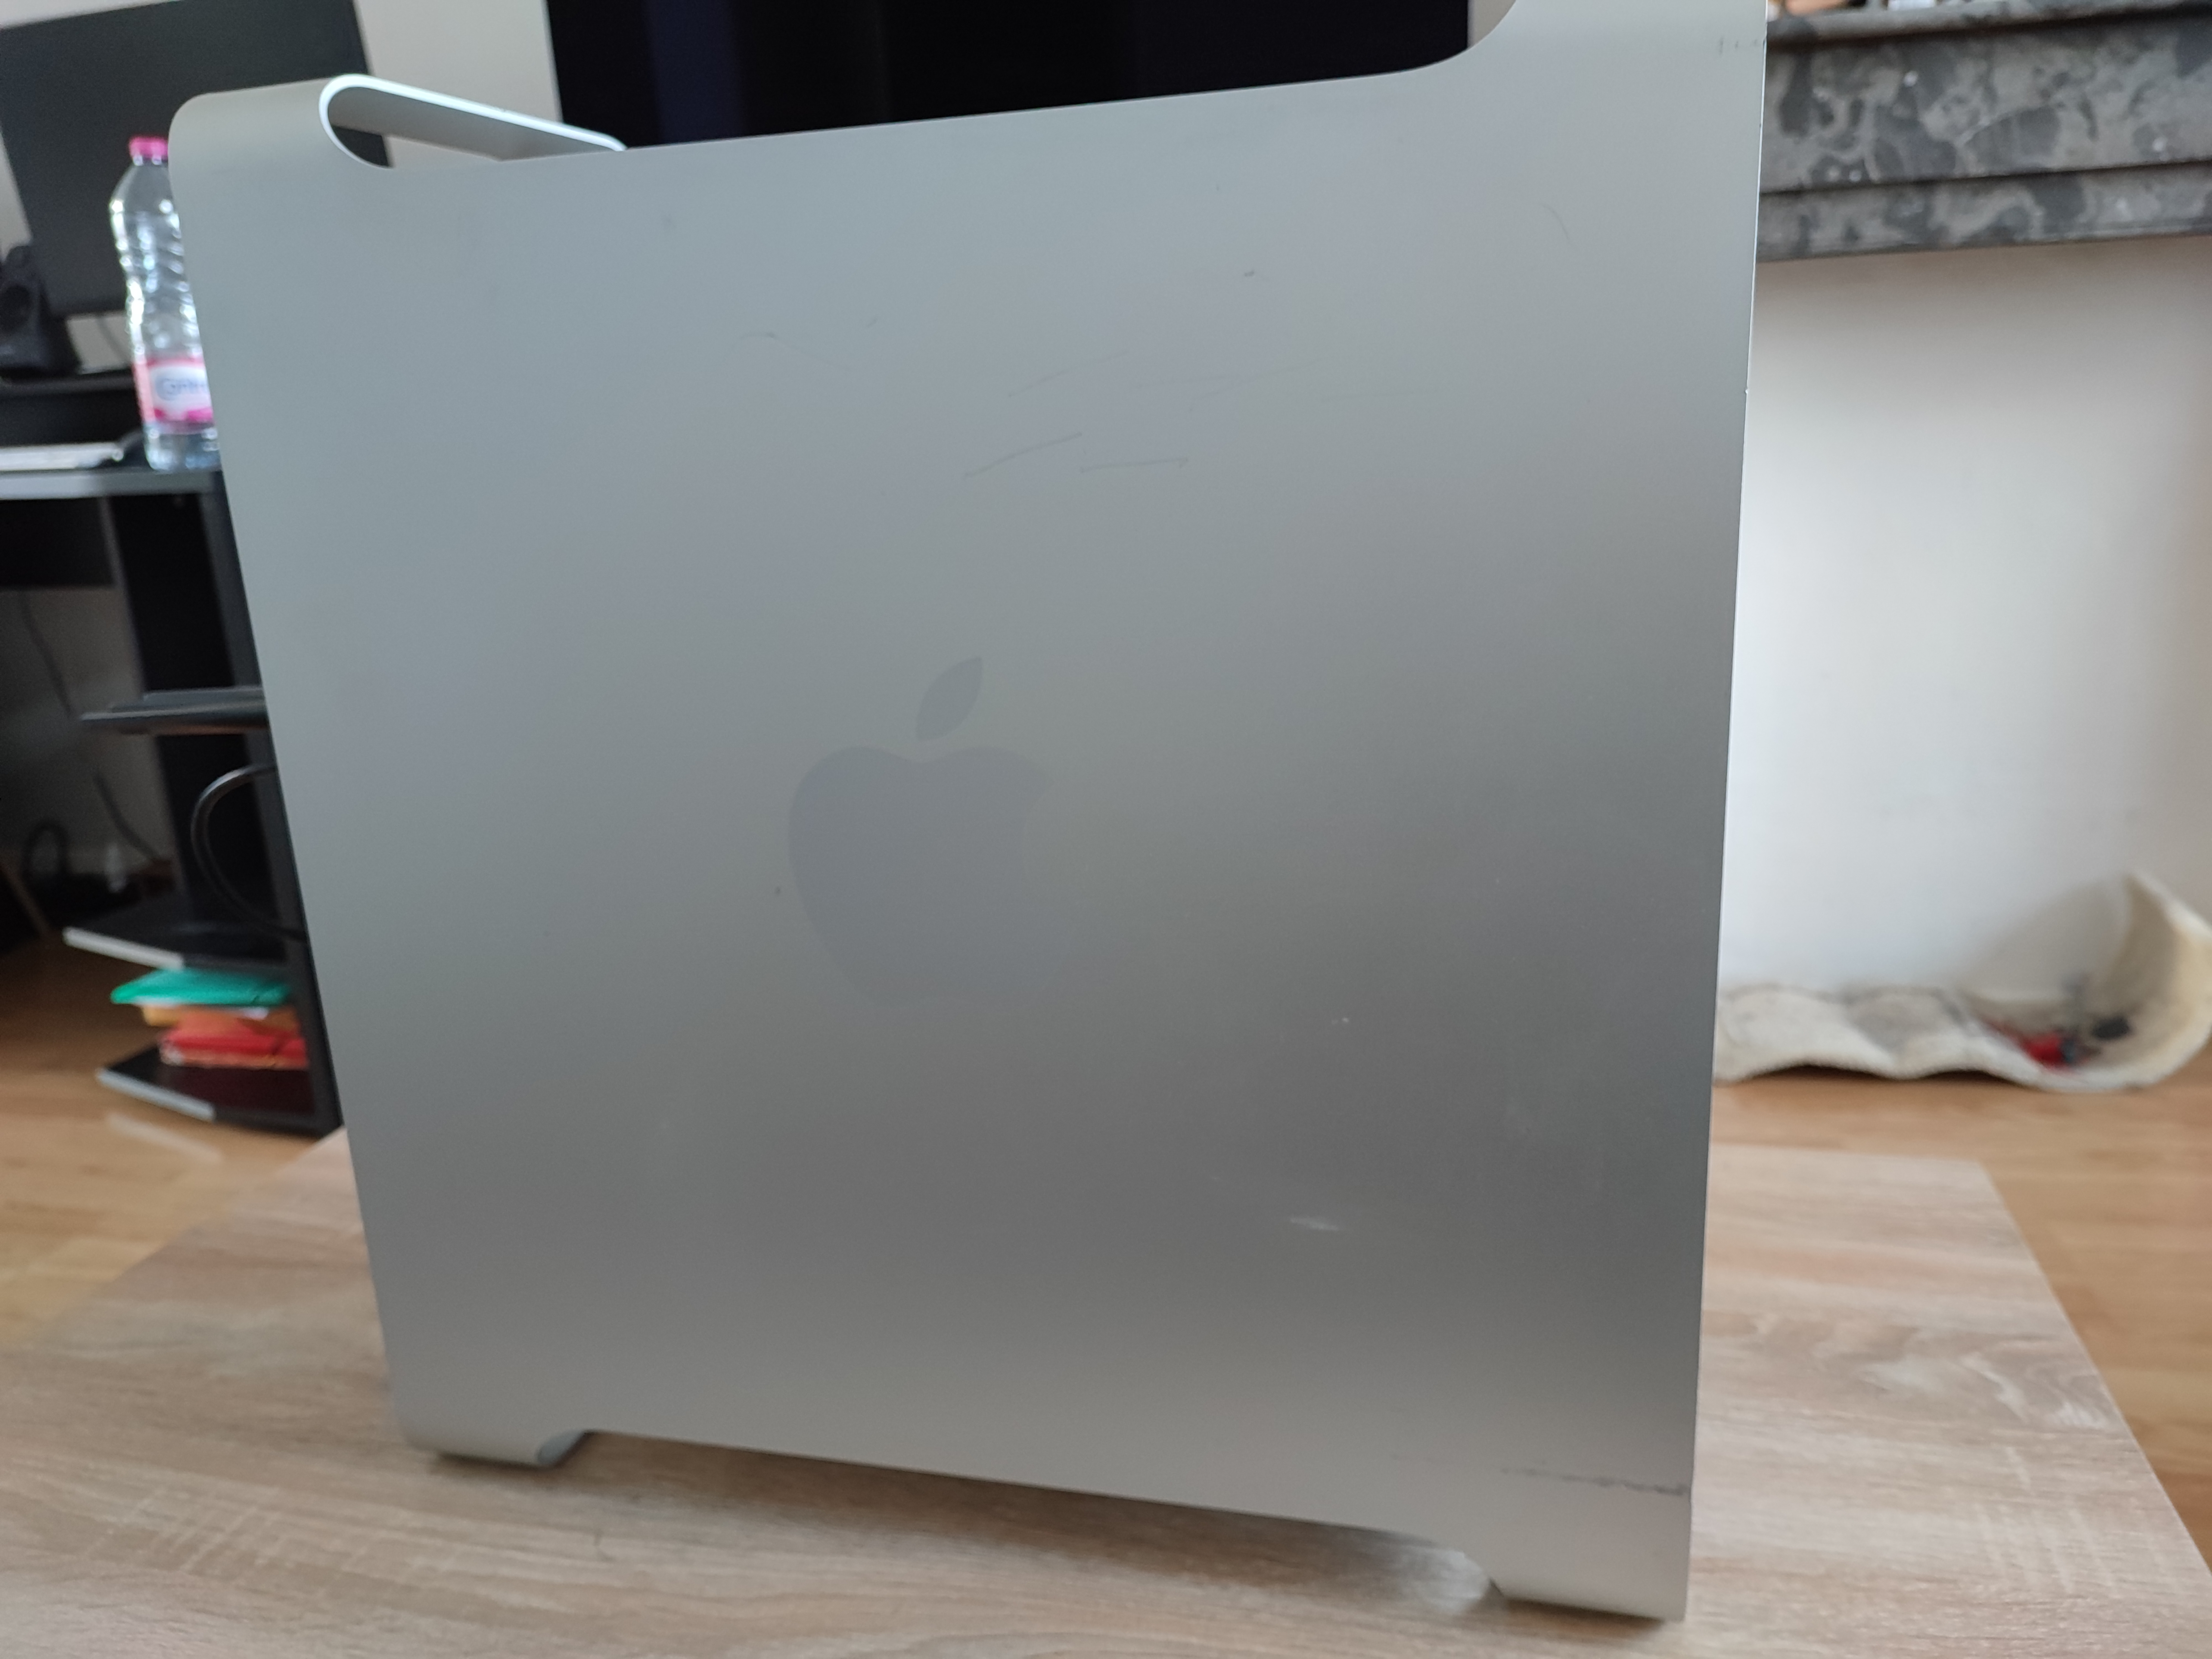 Mac Pro 5.1 flashé – Mis à jour